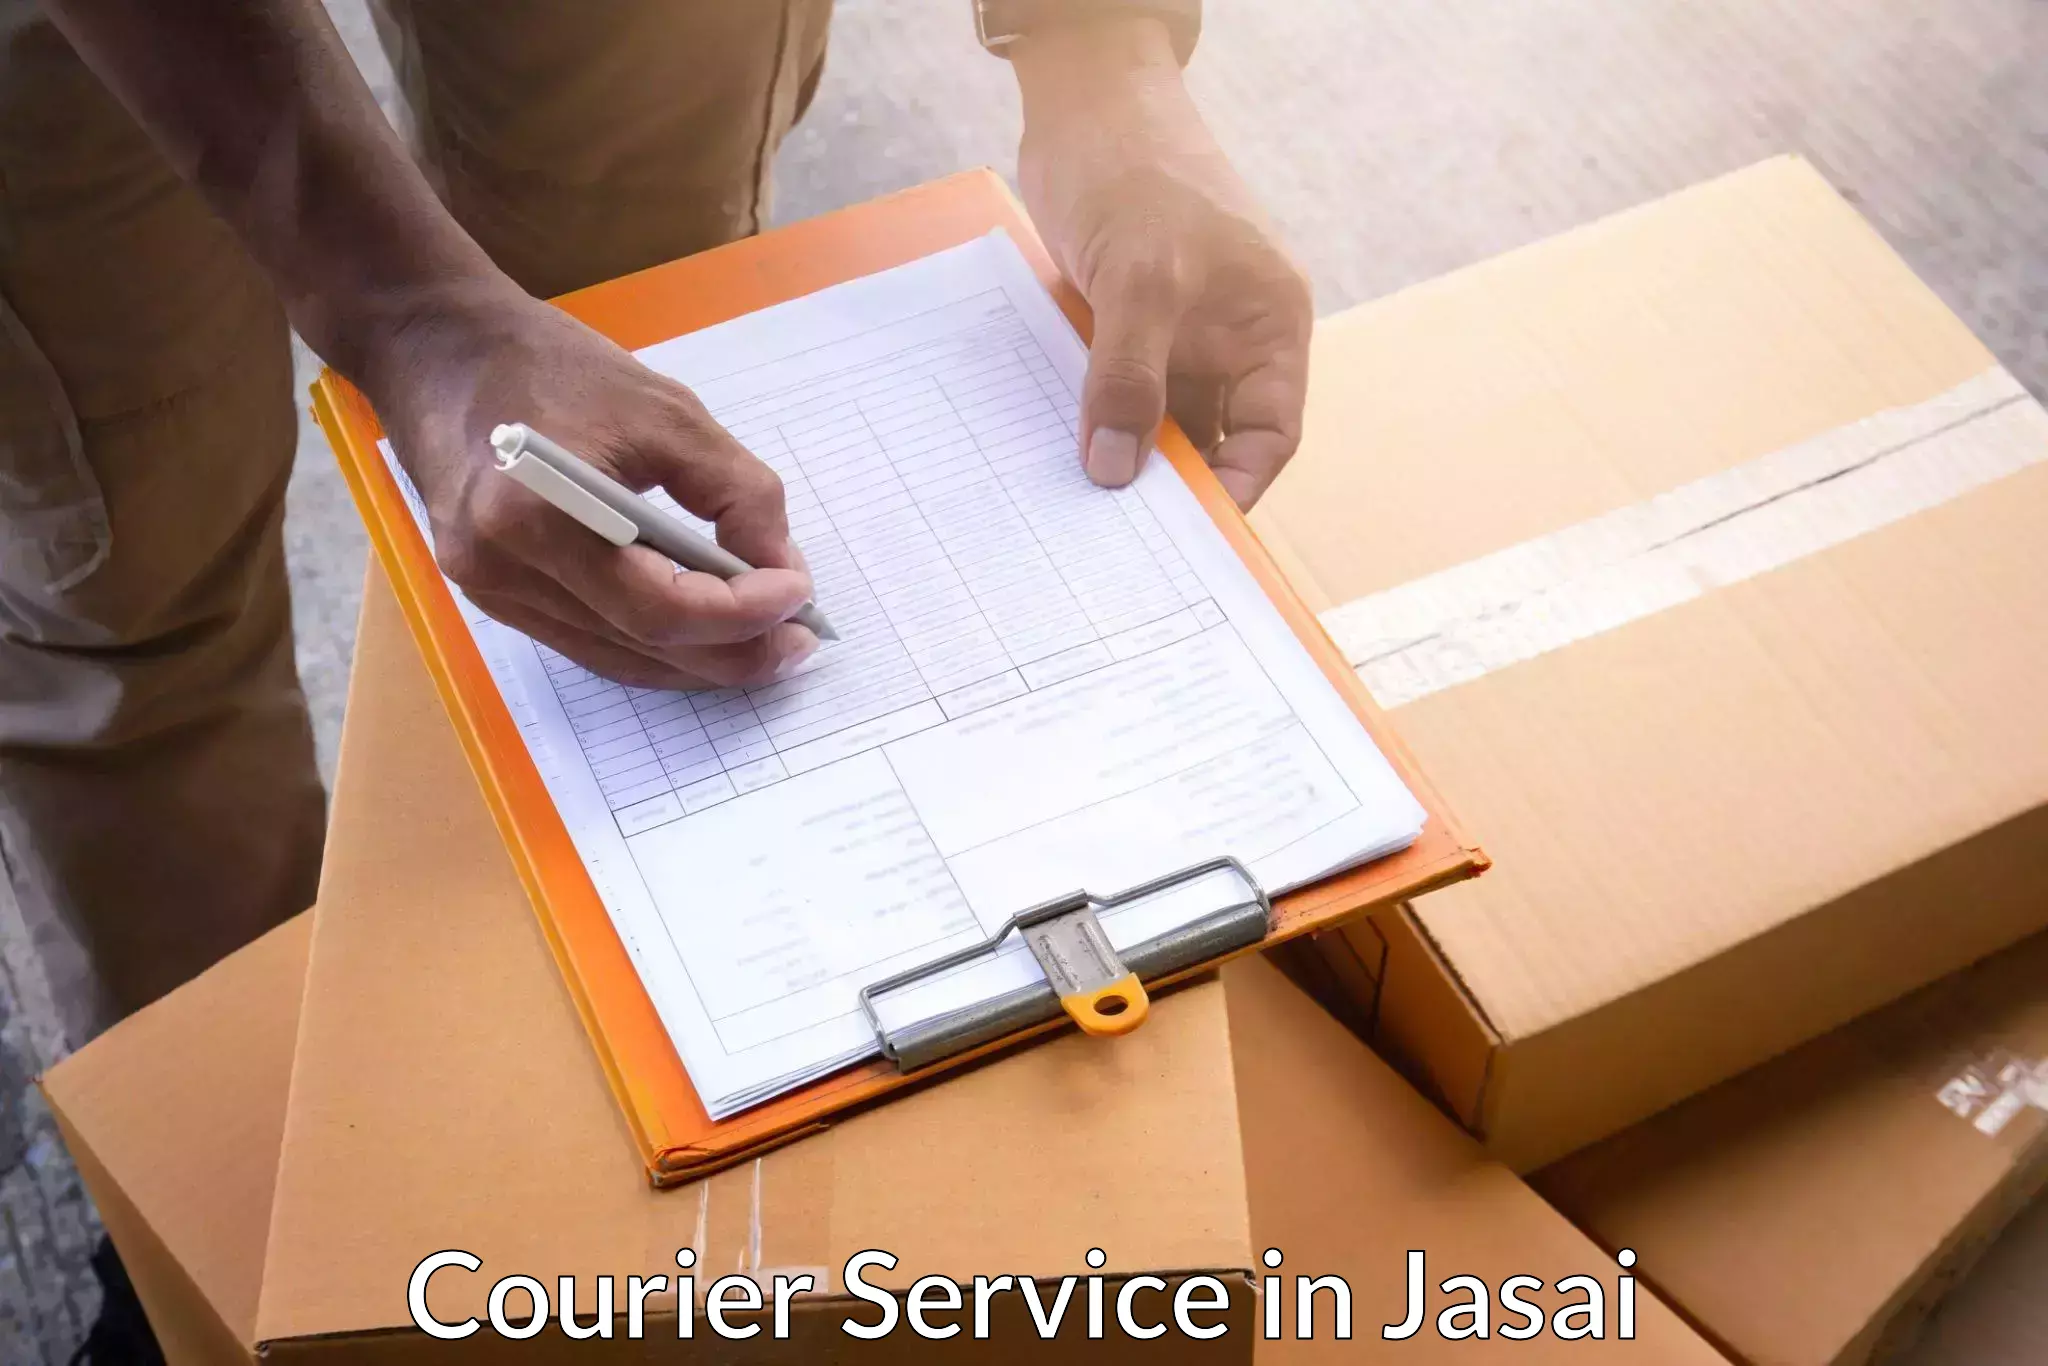 Urgent courier needs in Jasai